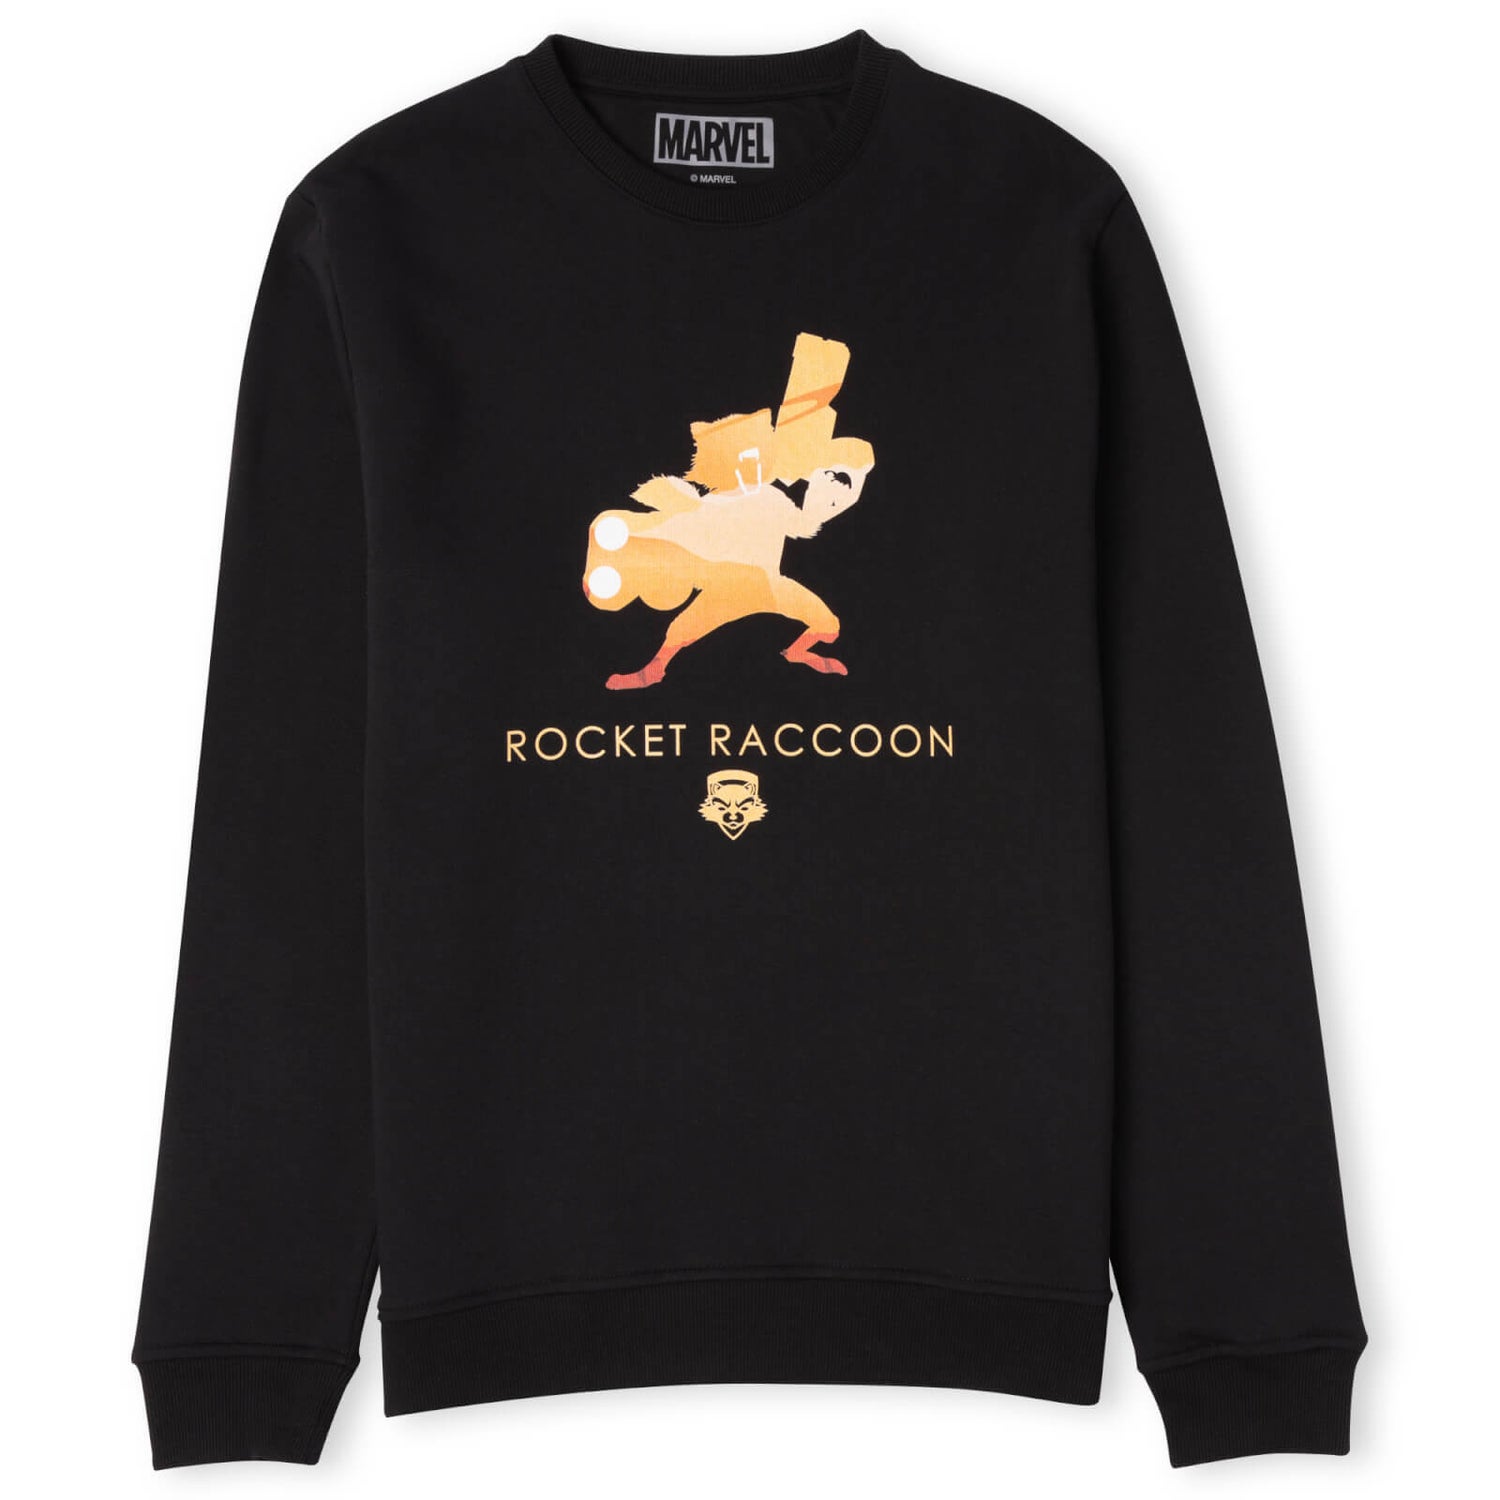 Marvel Rocket Raccoon Sweatshirt - Black